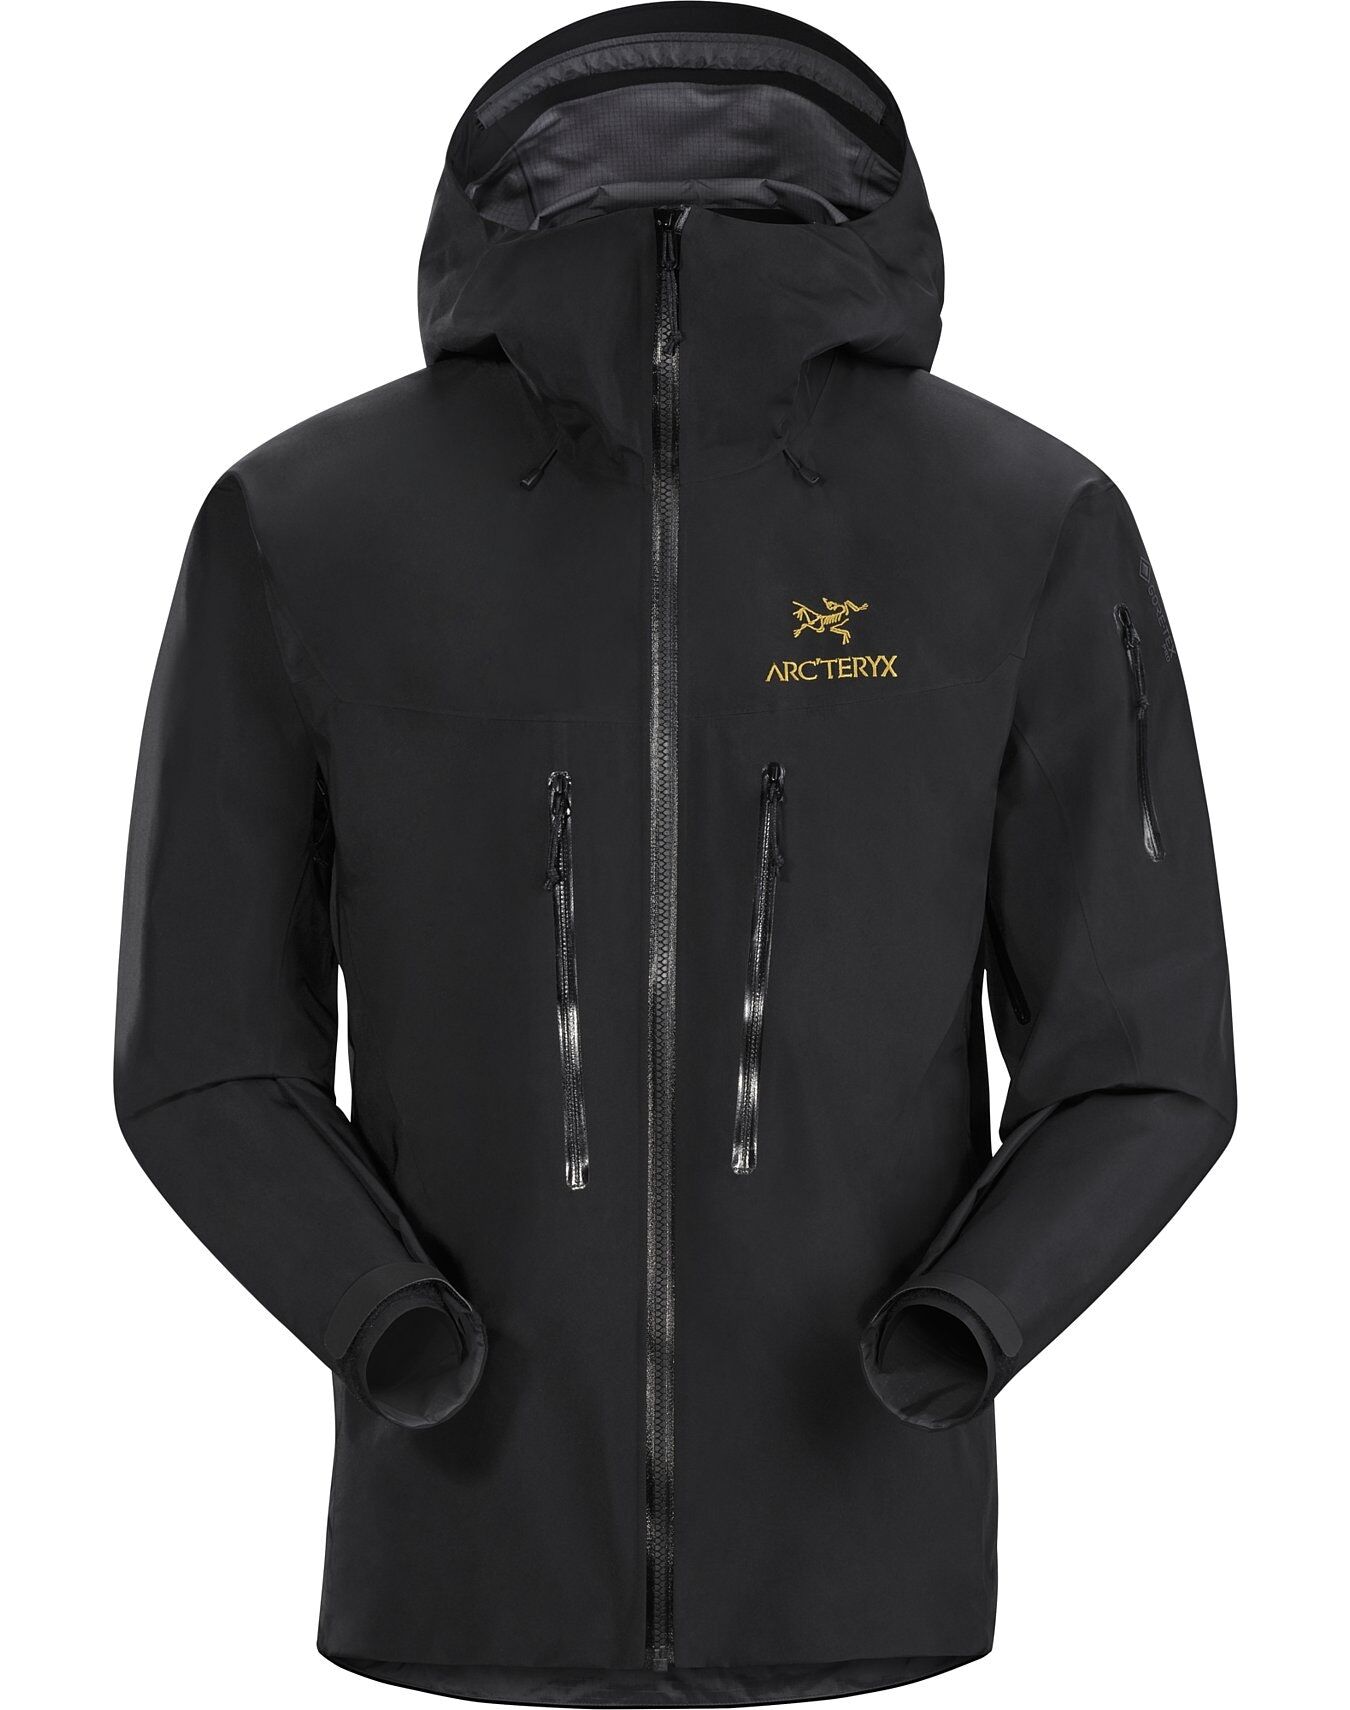 Arc'teryx Alpha SV Jacket - Hardshell jacket - Men's